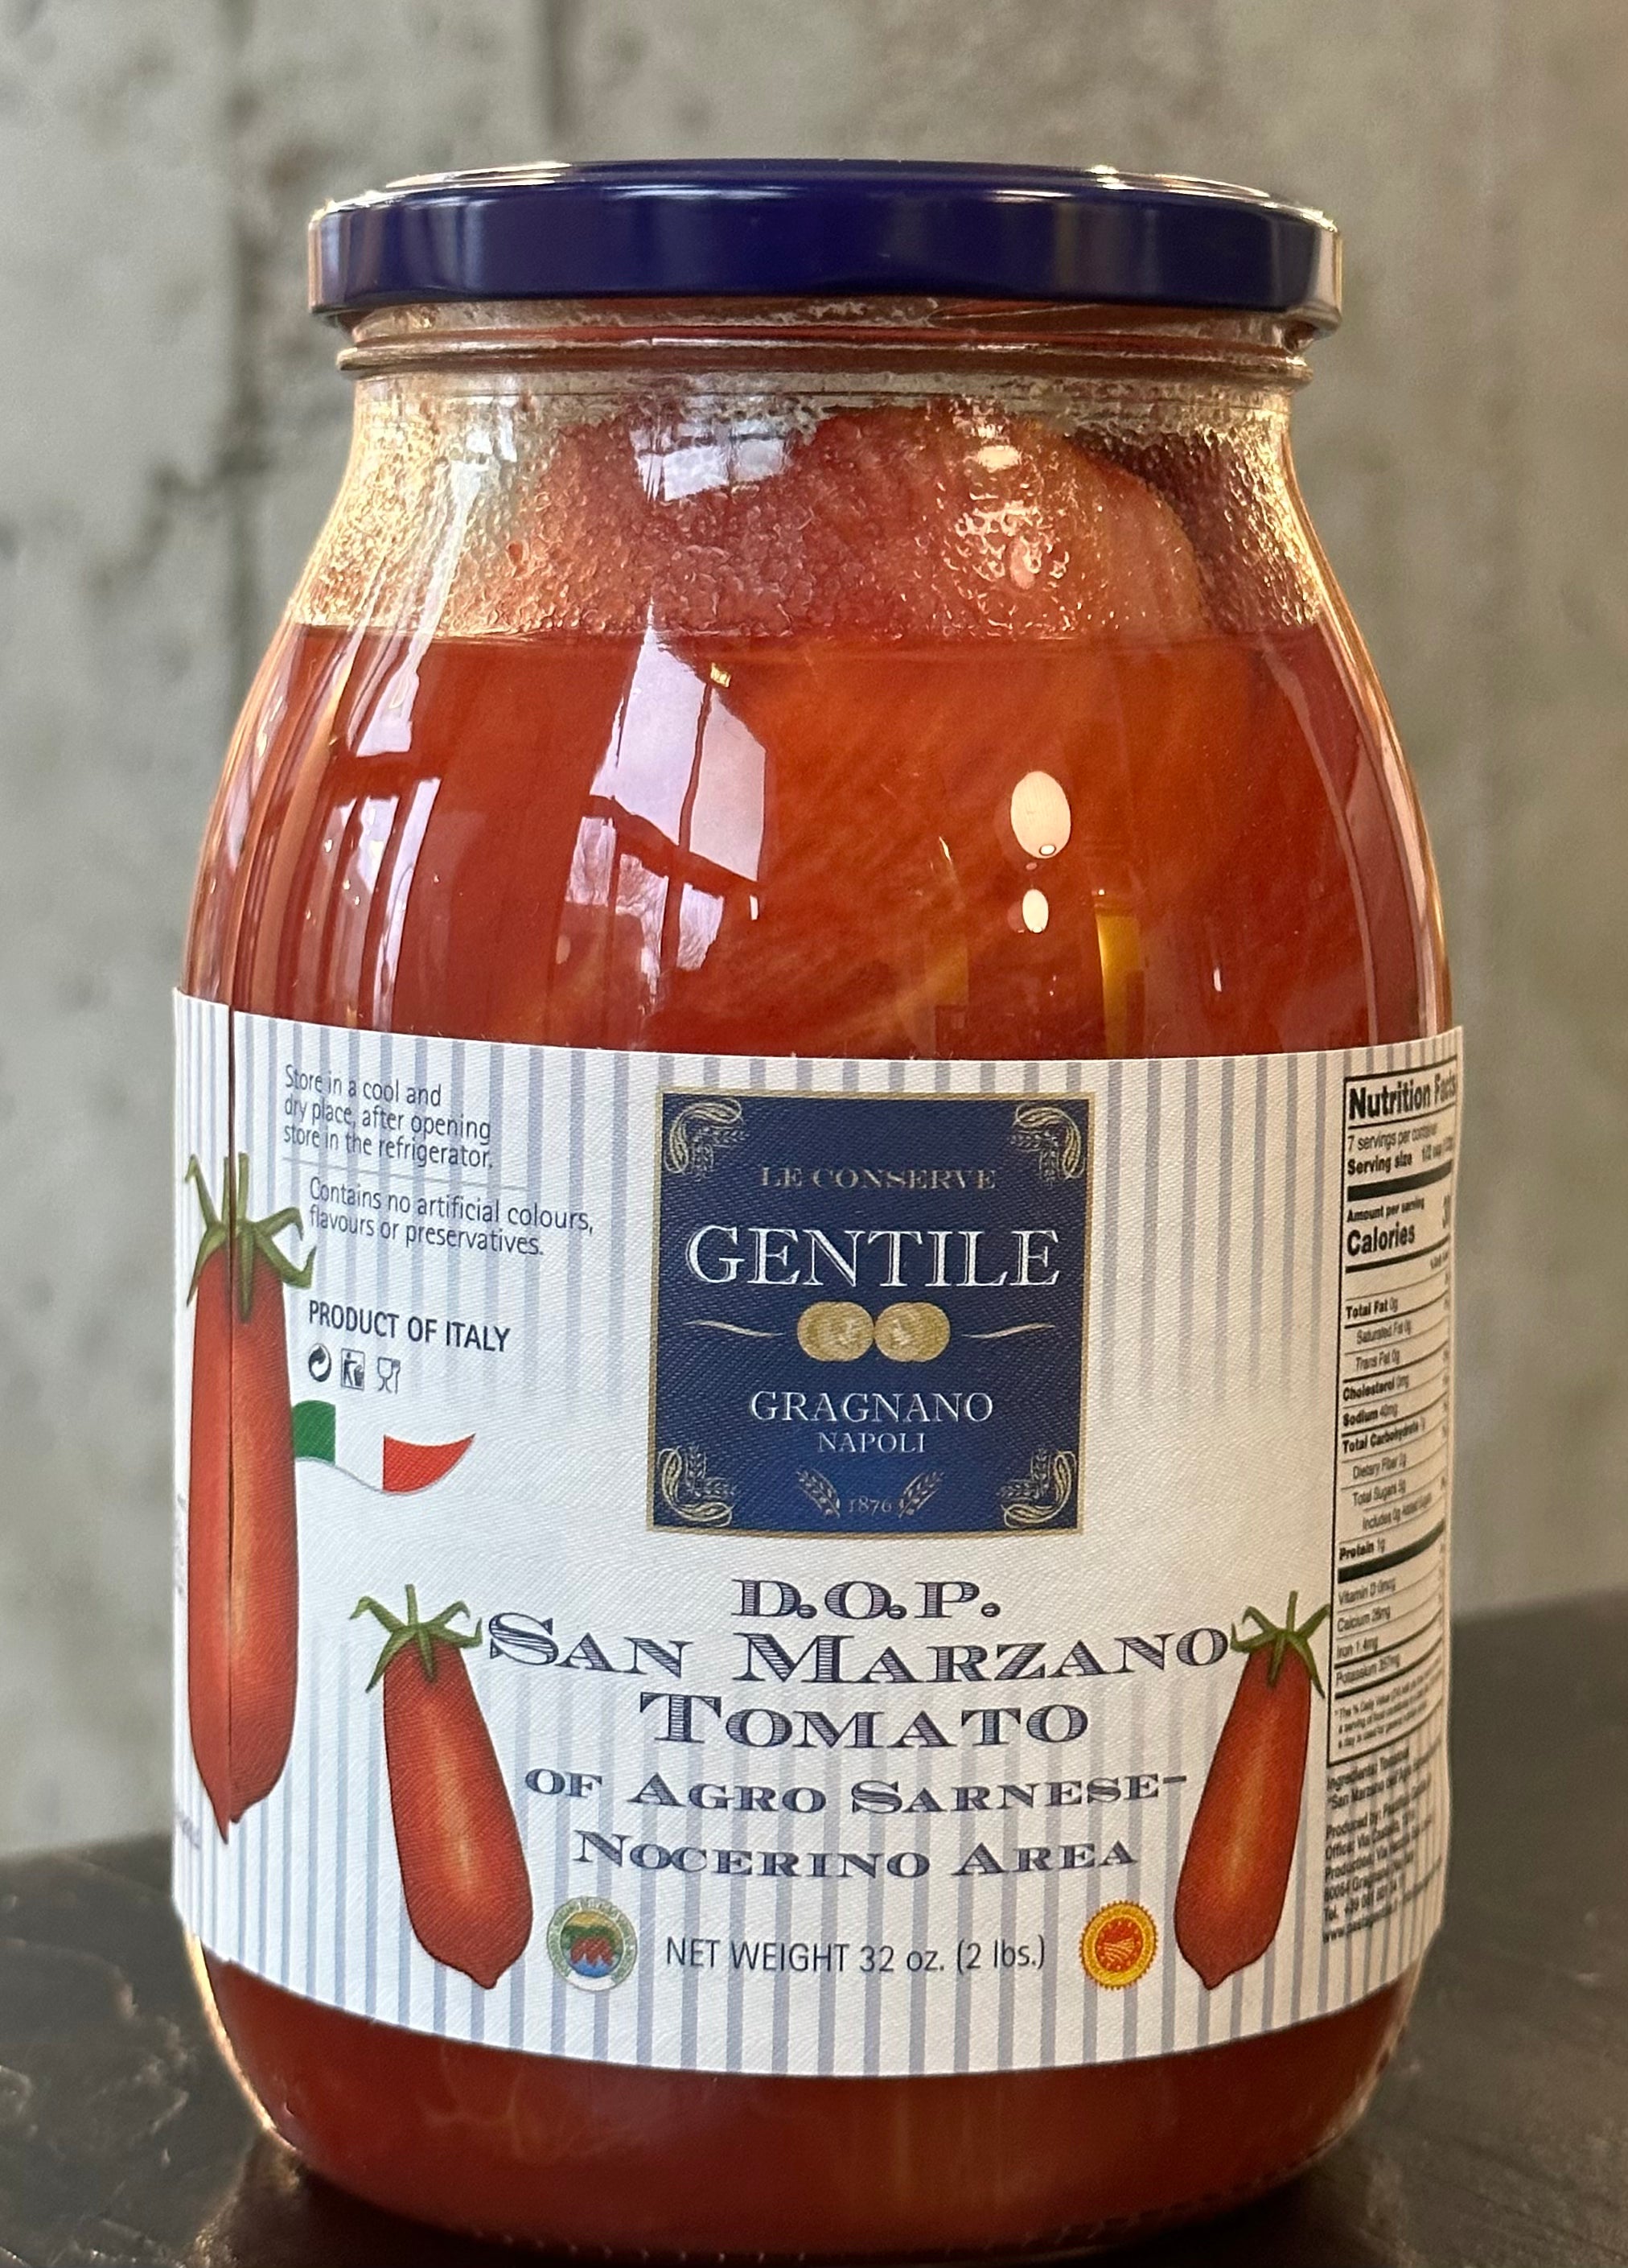 Gentile D.O.P. San Marzano Tomato of Agro Sarnese-Nocerino Area